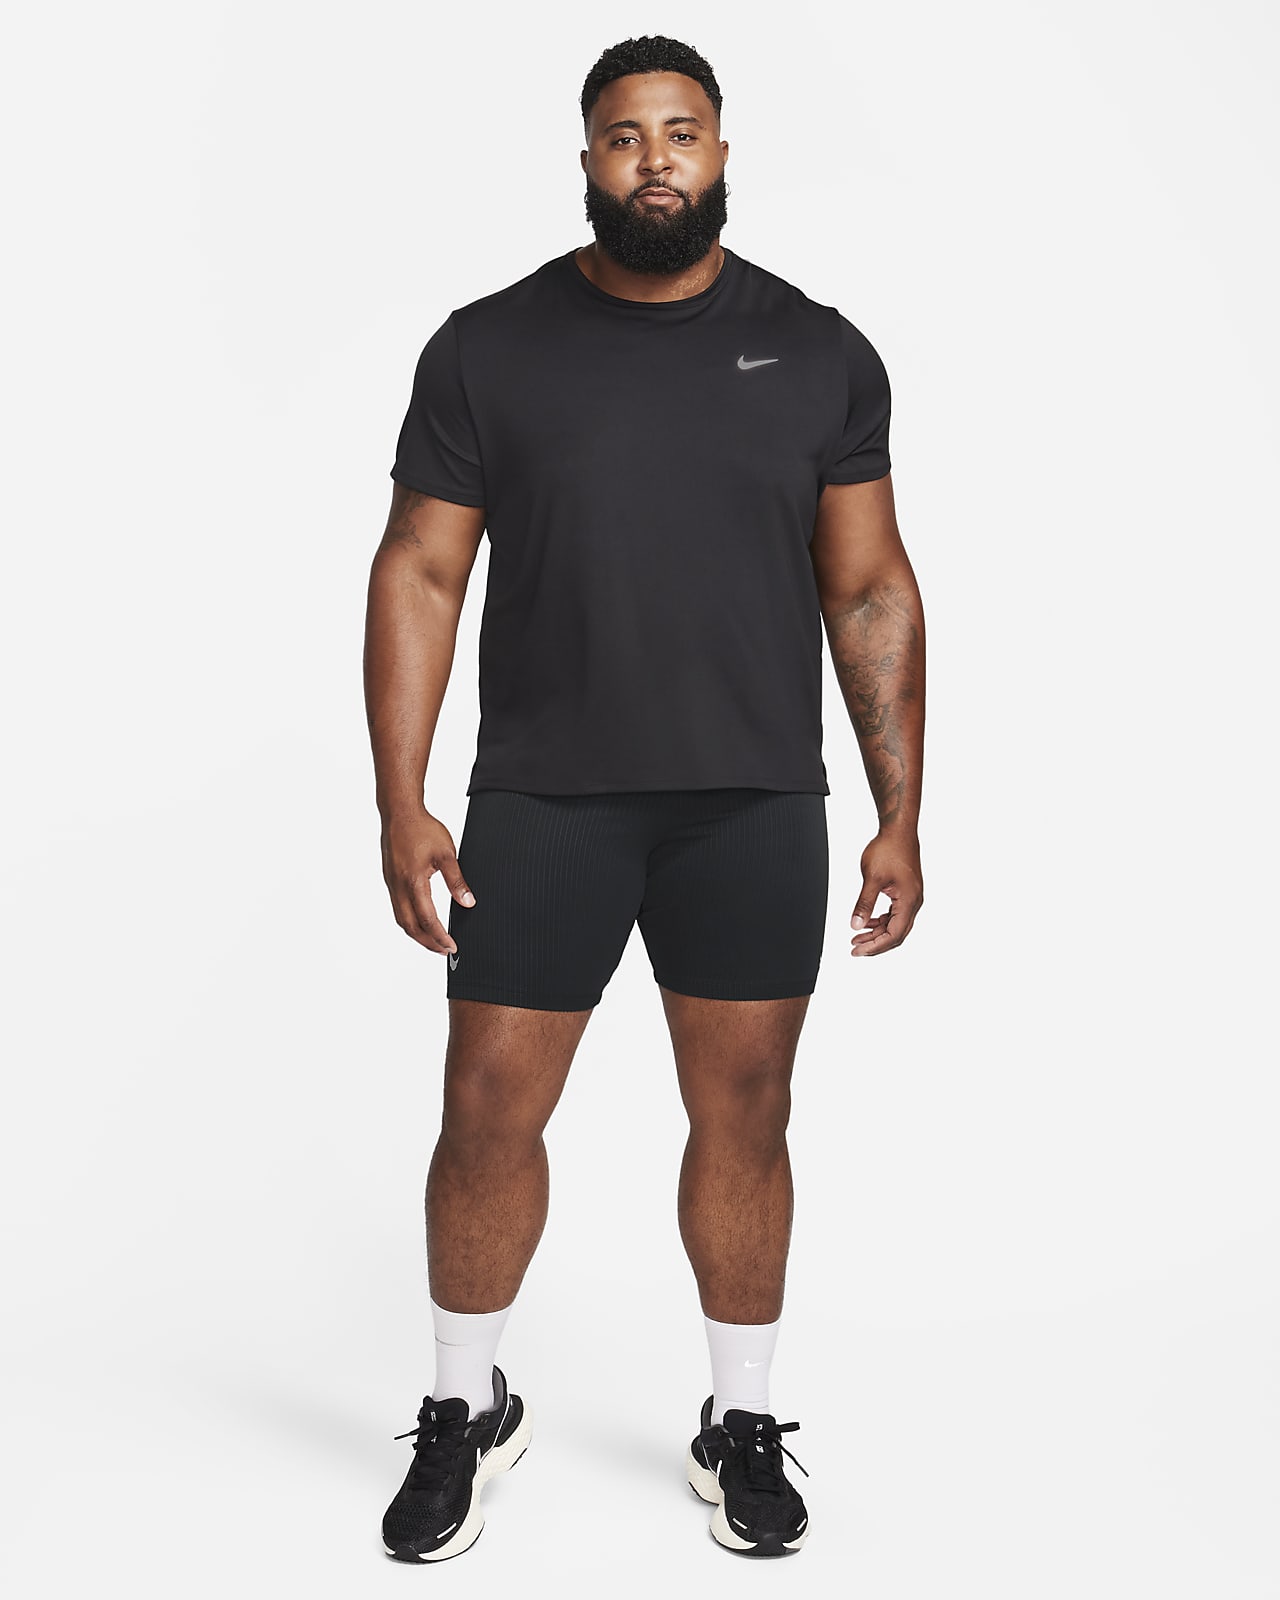 WTS] Nike Aeroswift Tights (Men's Small) : r/therunningrack